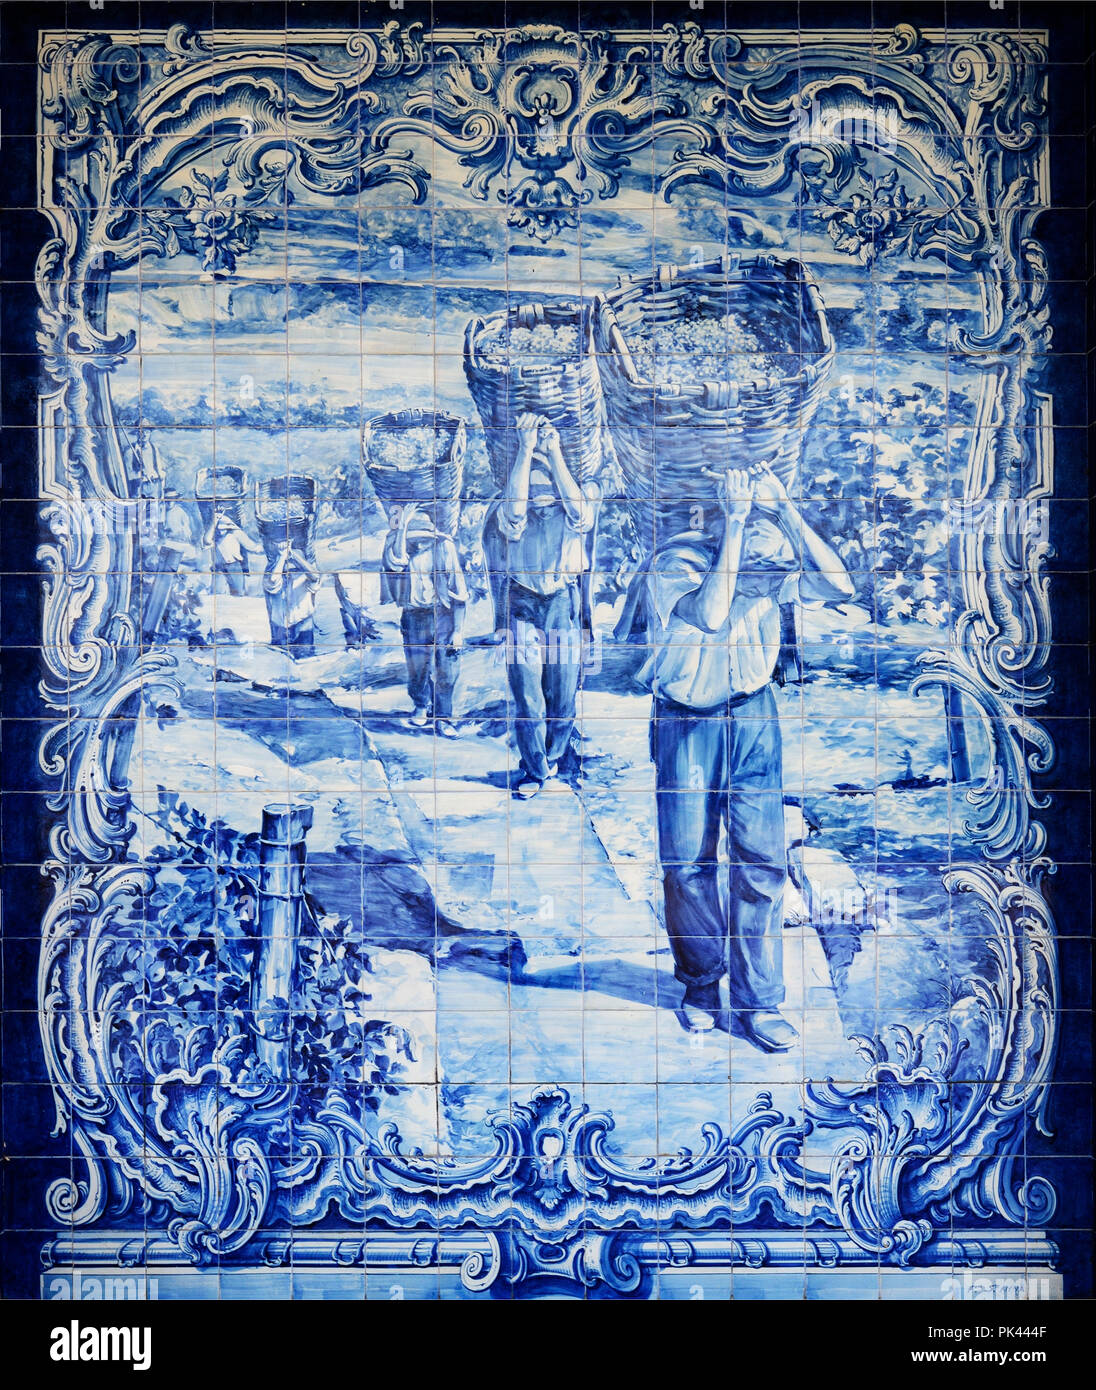 Carreaux bleus traditionnels (azulejos) illustrant la récolte en lien avec le vin de Porto. La gare de Pocinho, Alto Douro. Classée au patrimoine mondial de tr Banque D'Images